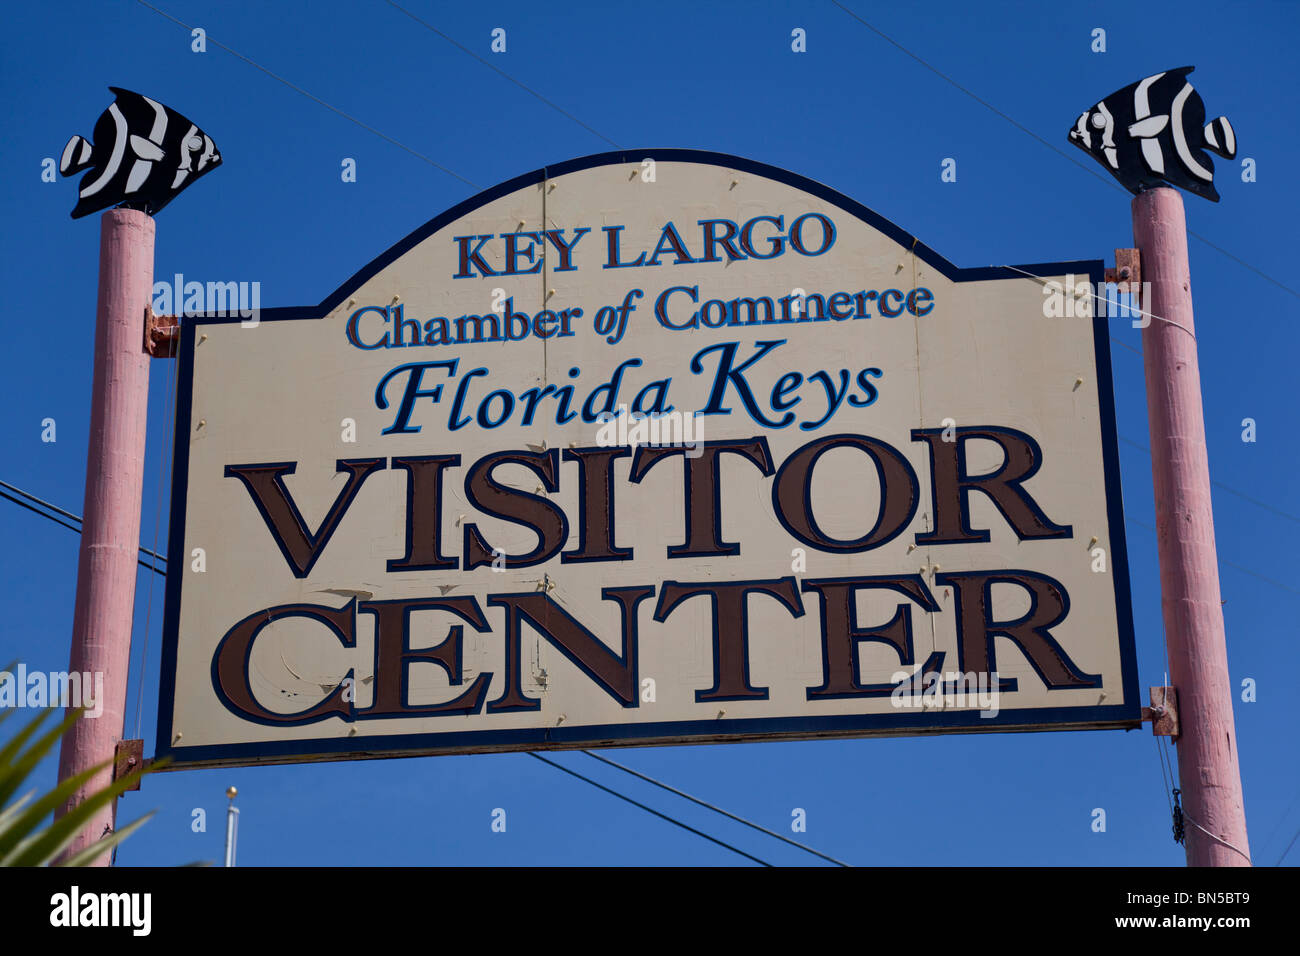 Key Largo Chamber of Commerce, Florida, USA Stock Photo